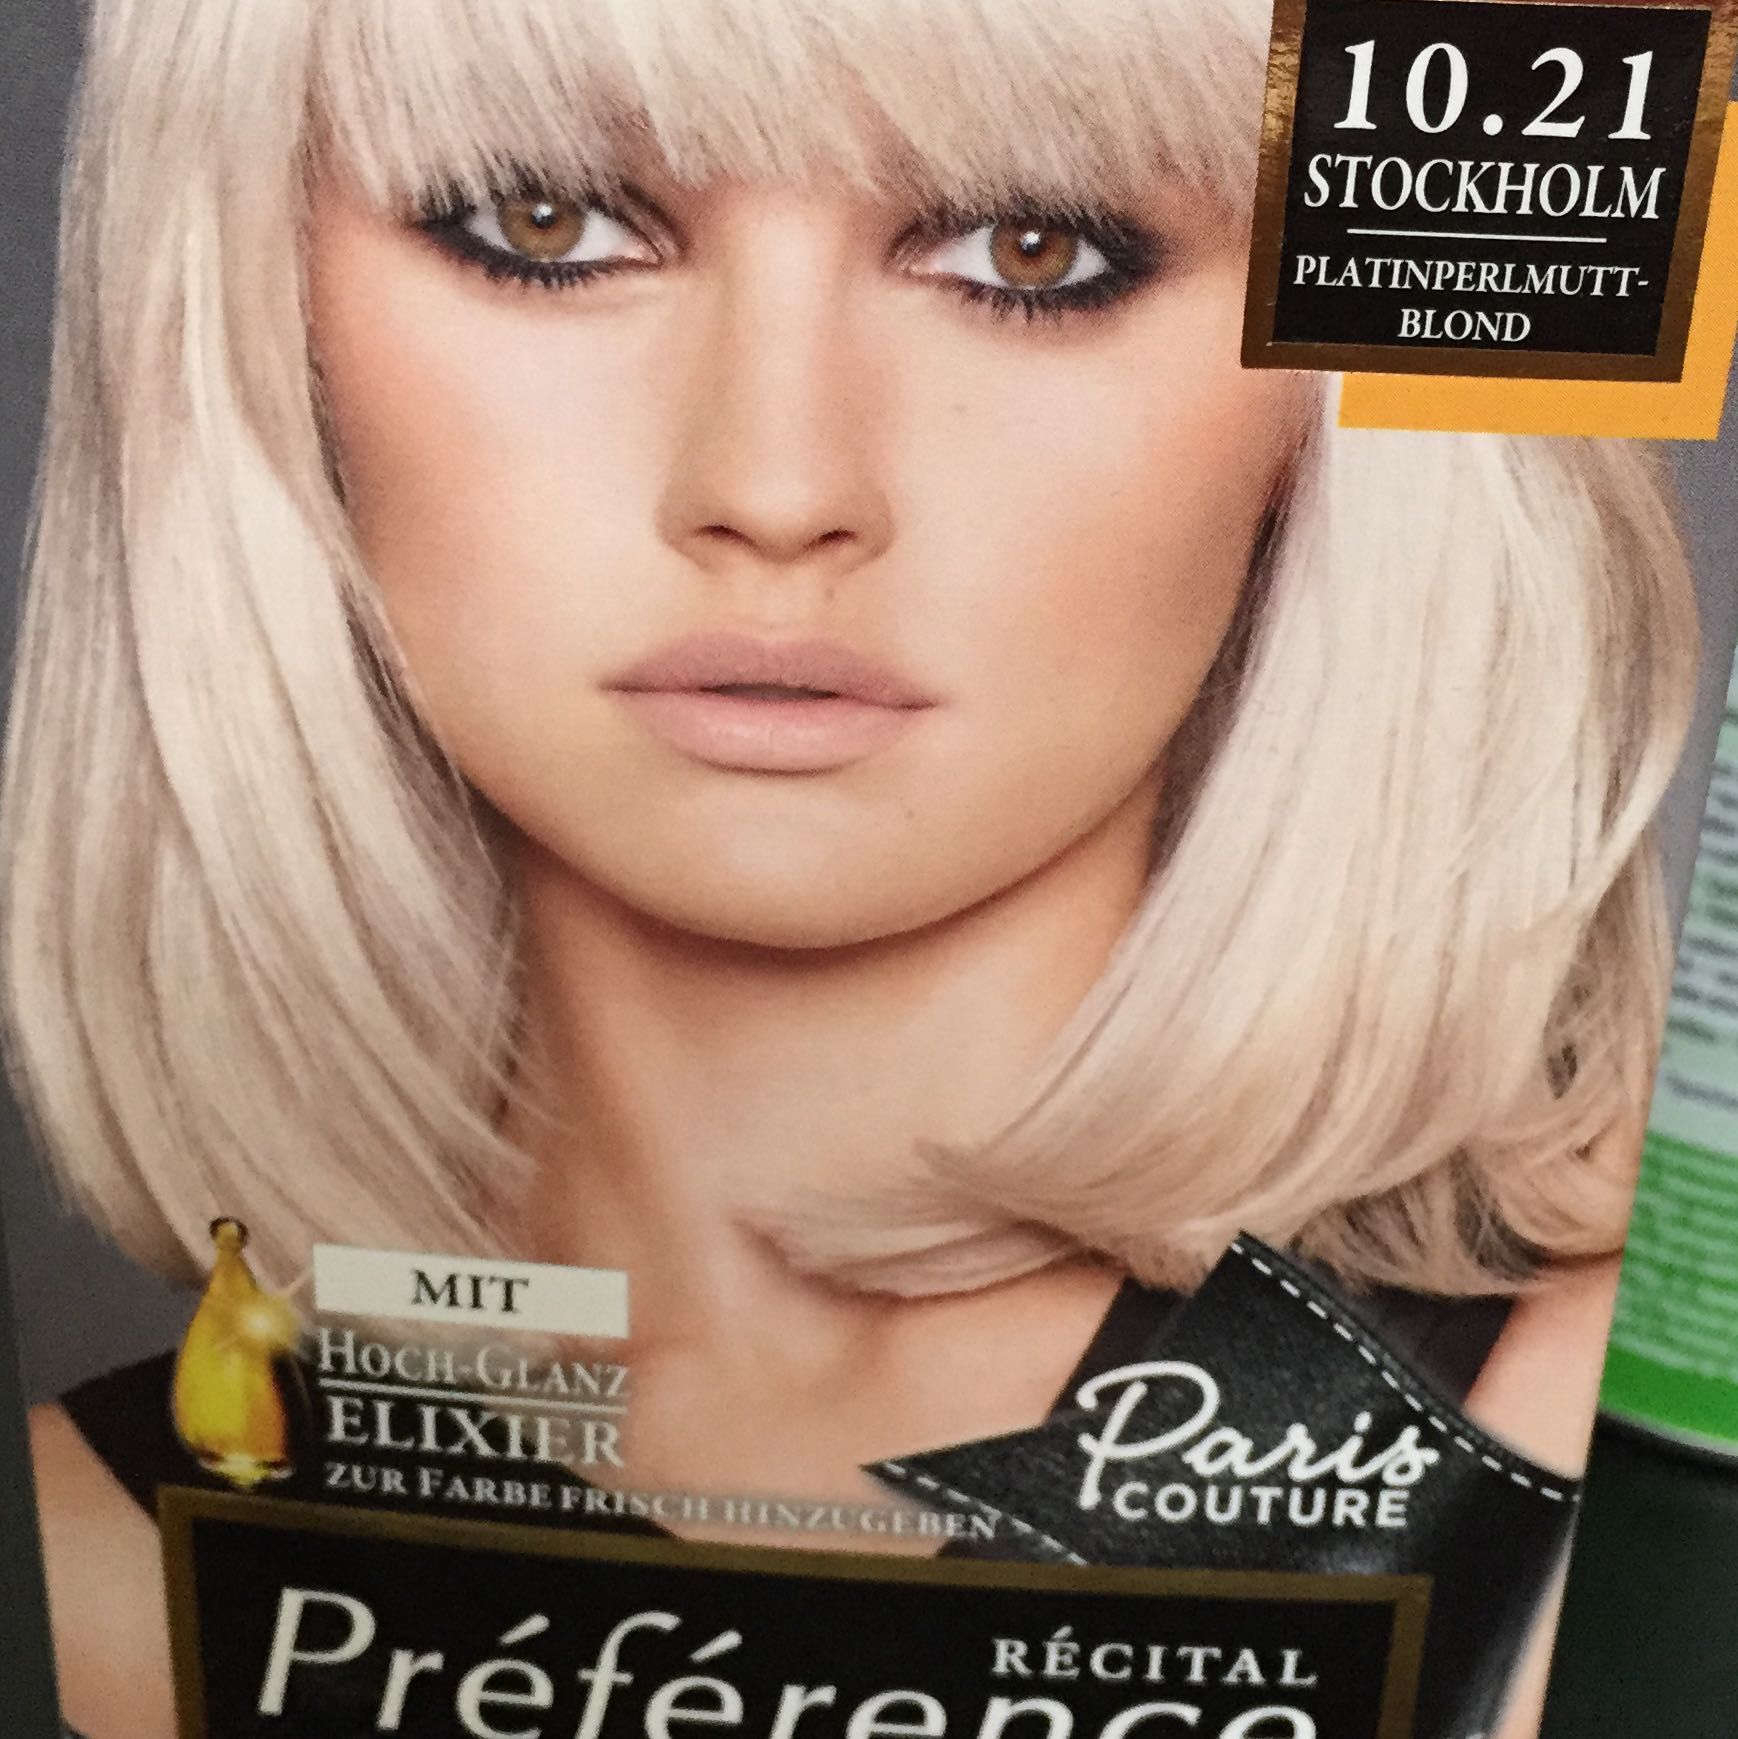 Friseurfrage Nach Blondierung Coloration Haare Friseur Blond